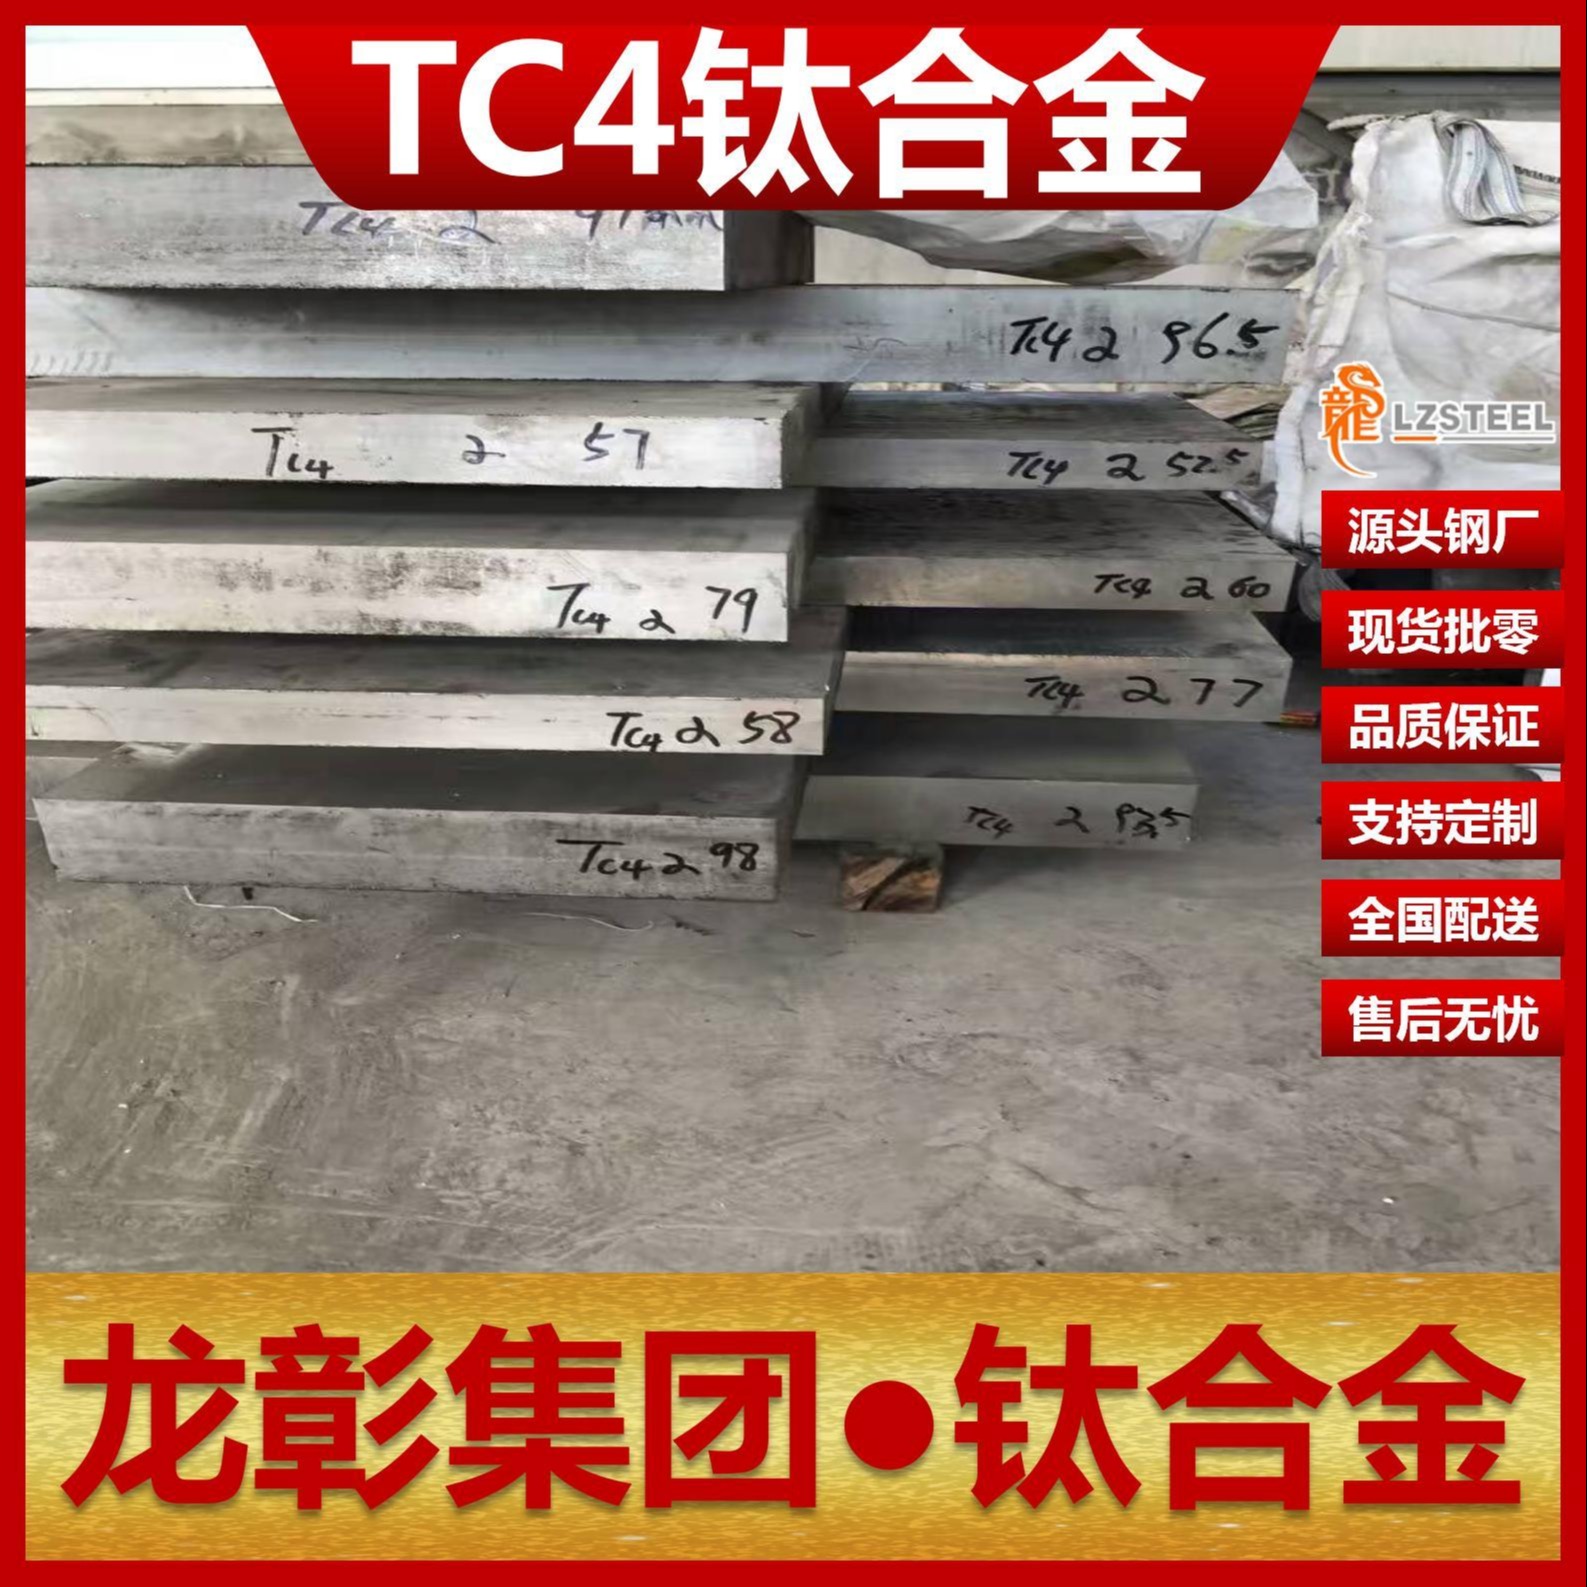 TC4钛合金现货批零钛板高品质 TC4钛板棒管可定制加工龙彰集团